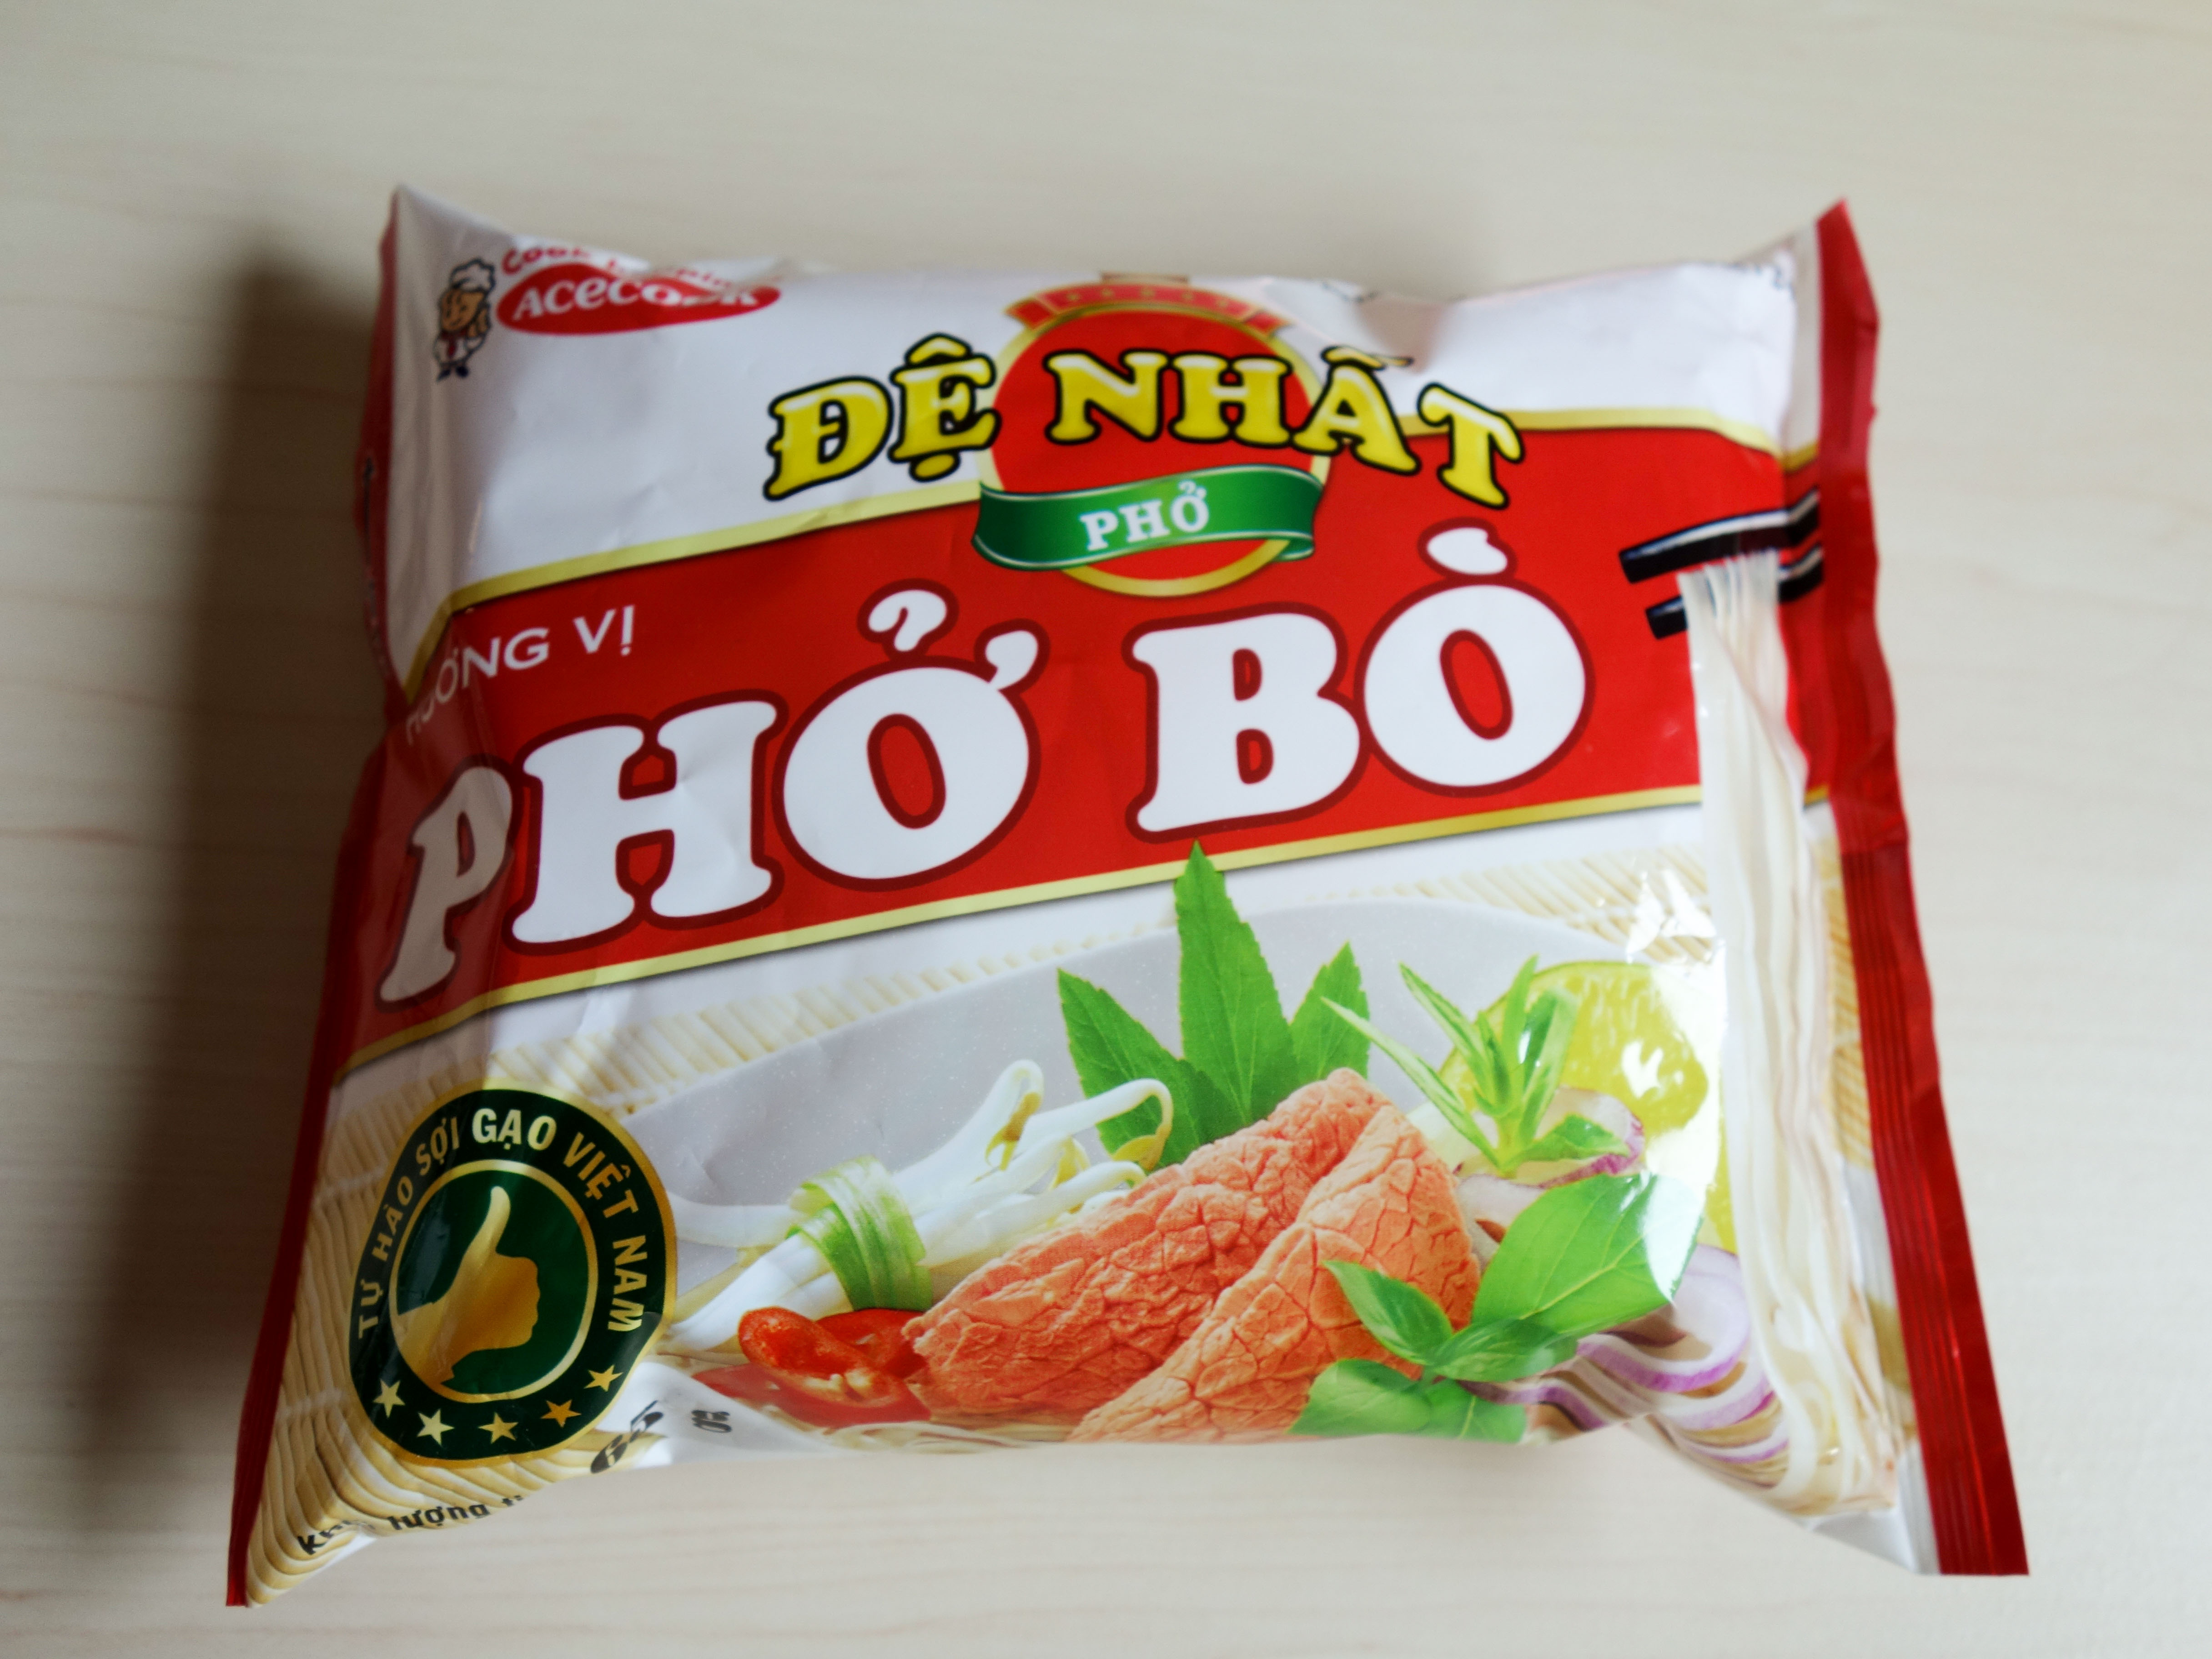 エースコックベトナムから発売されているインスタント麺 Pho Bo を食べてみました ぱどるらいふ